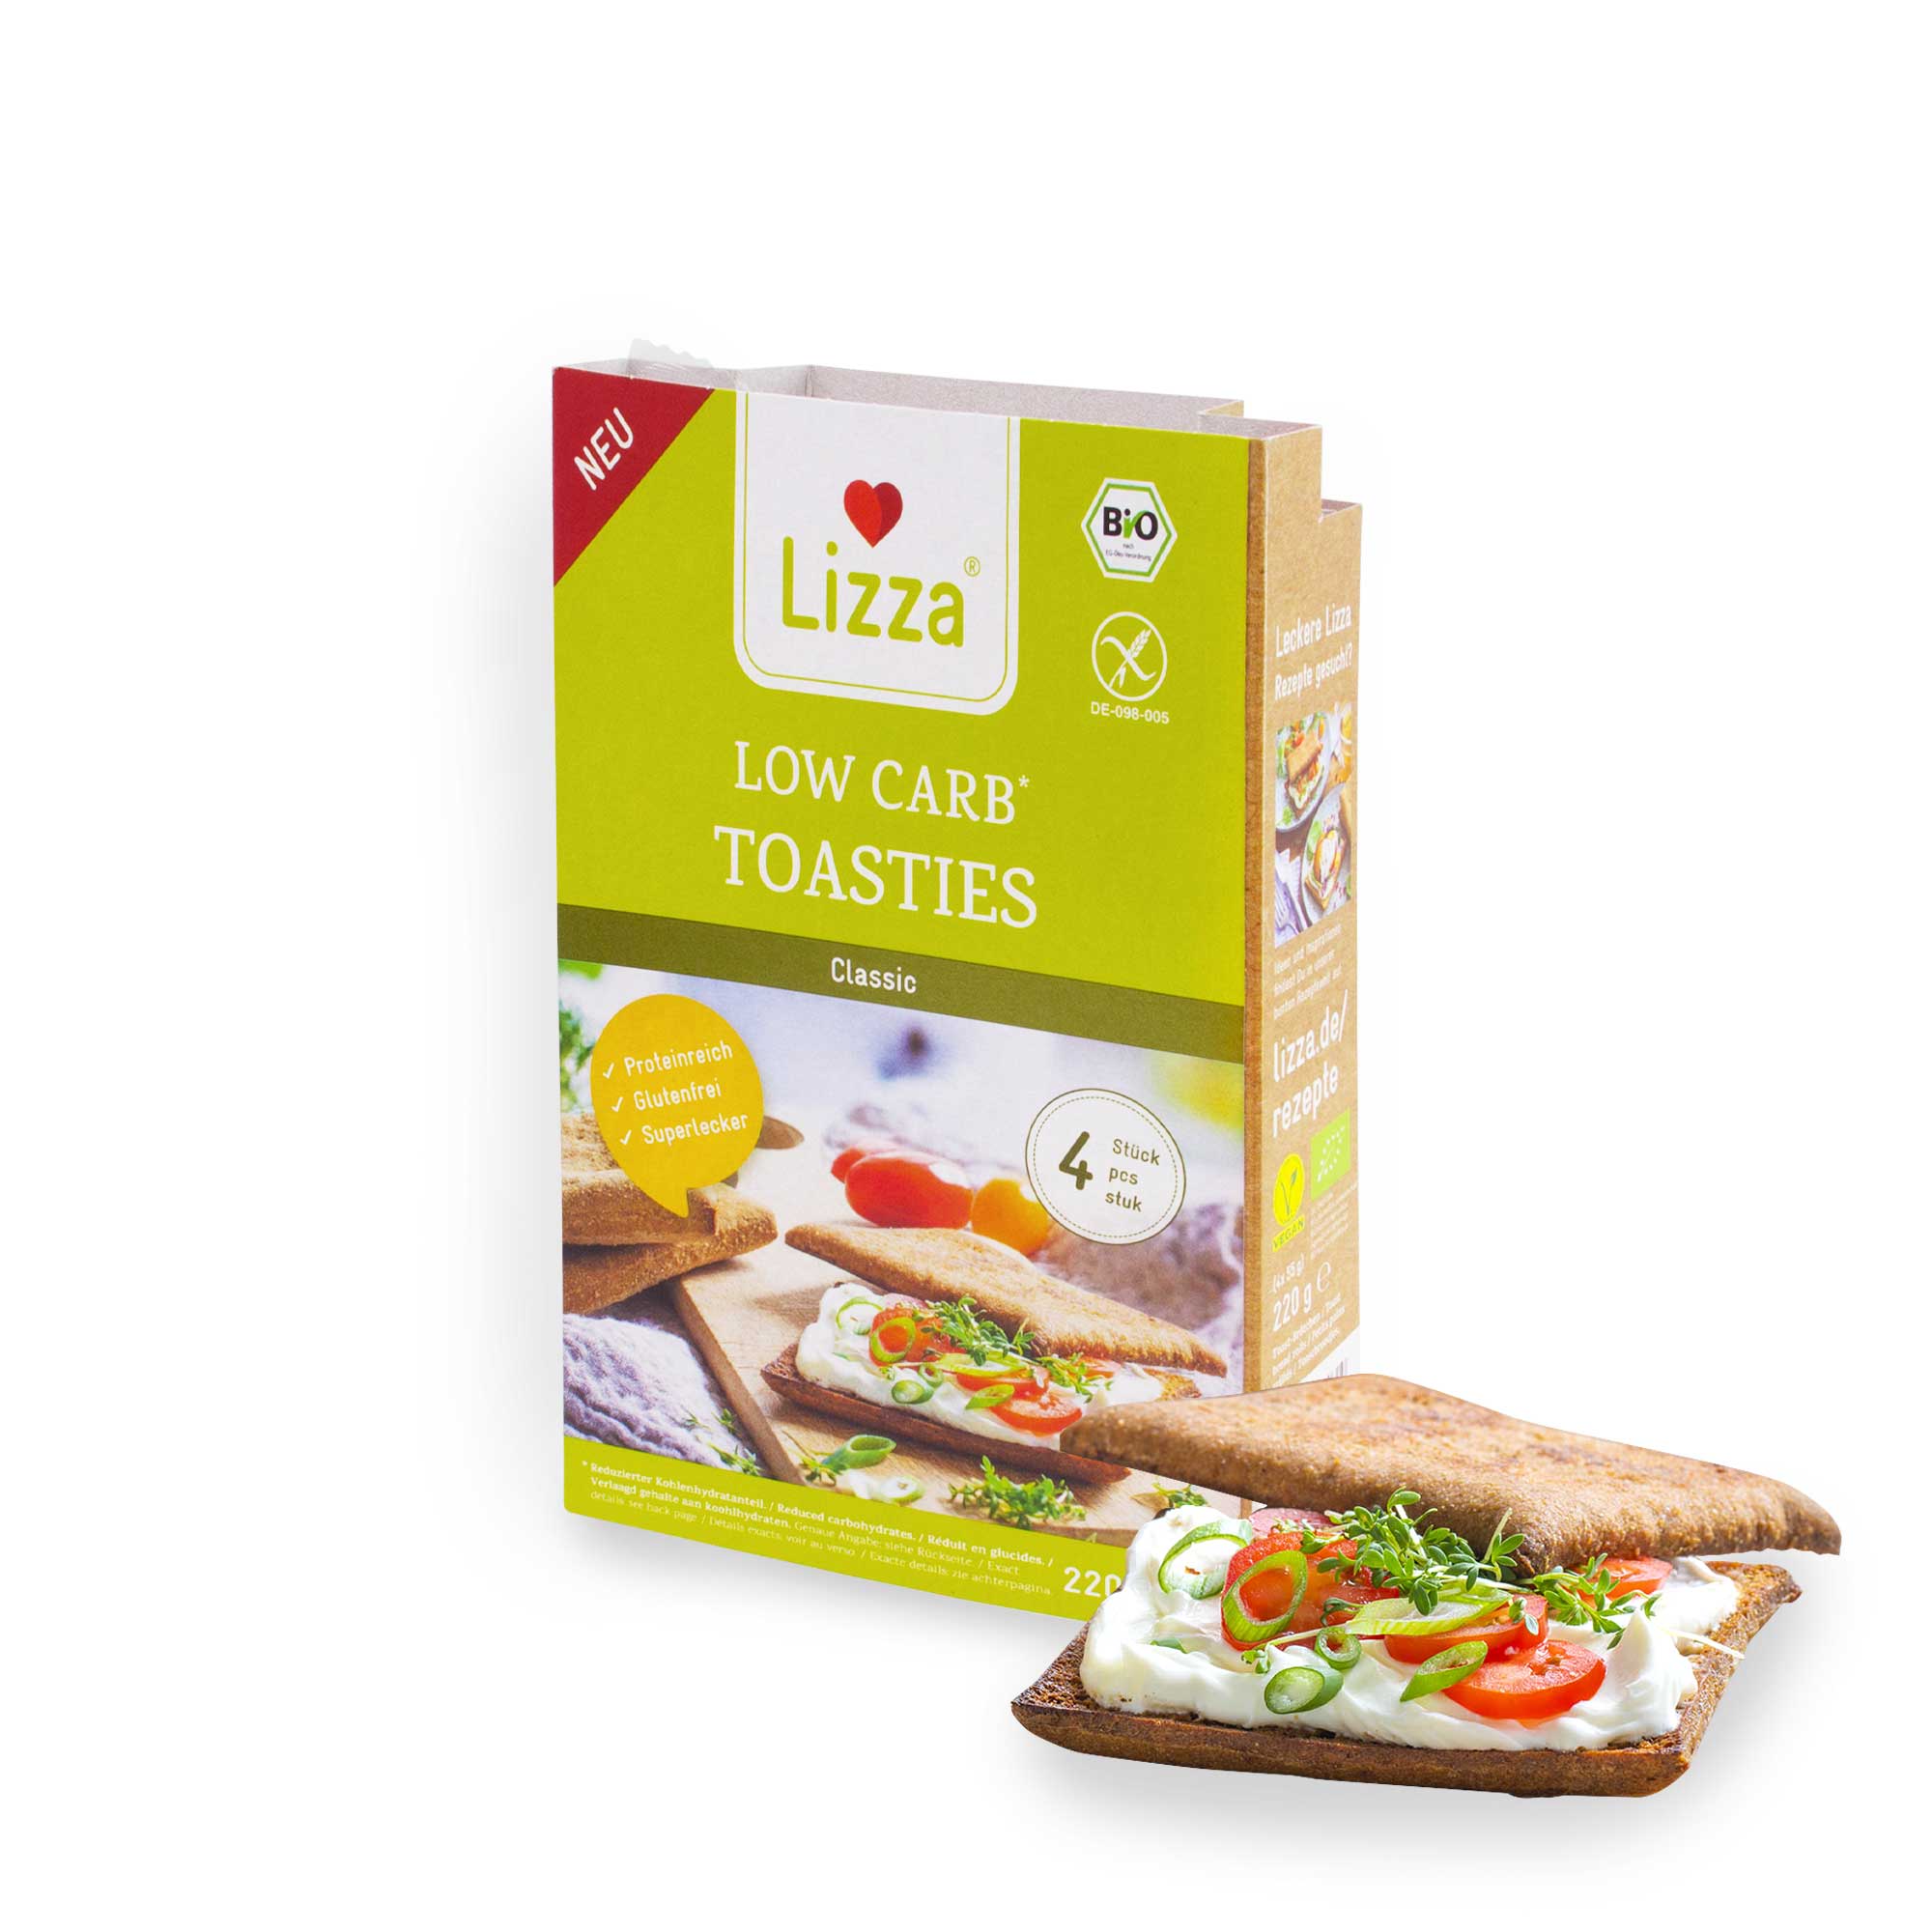 Lizza Low Carb Toasties » Bio » 4 Stück à 50g (94% weniger Kohlenhydrate als herkömmlicher Weizen-Toast)